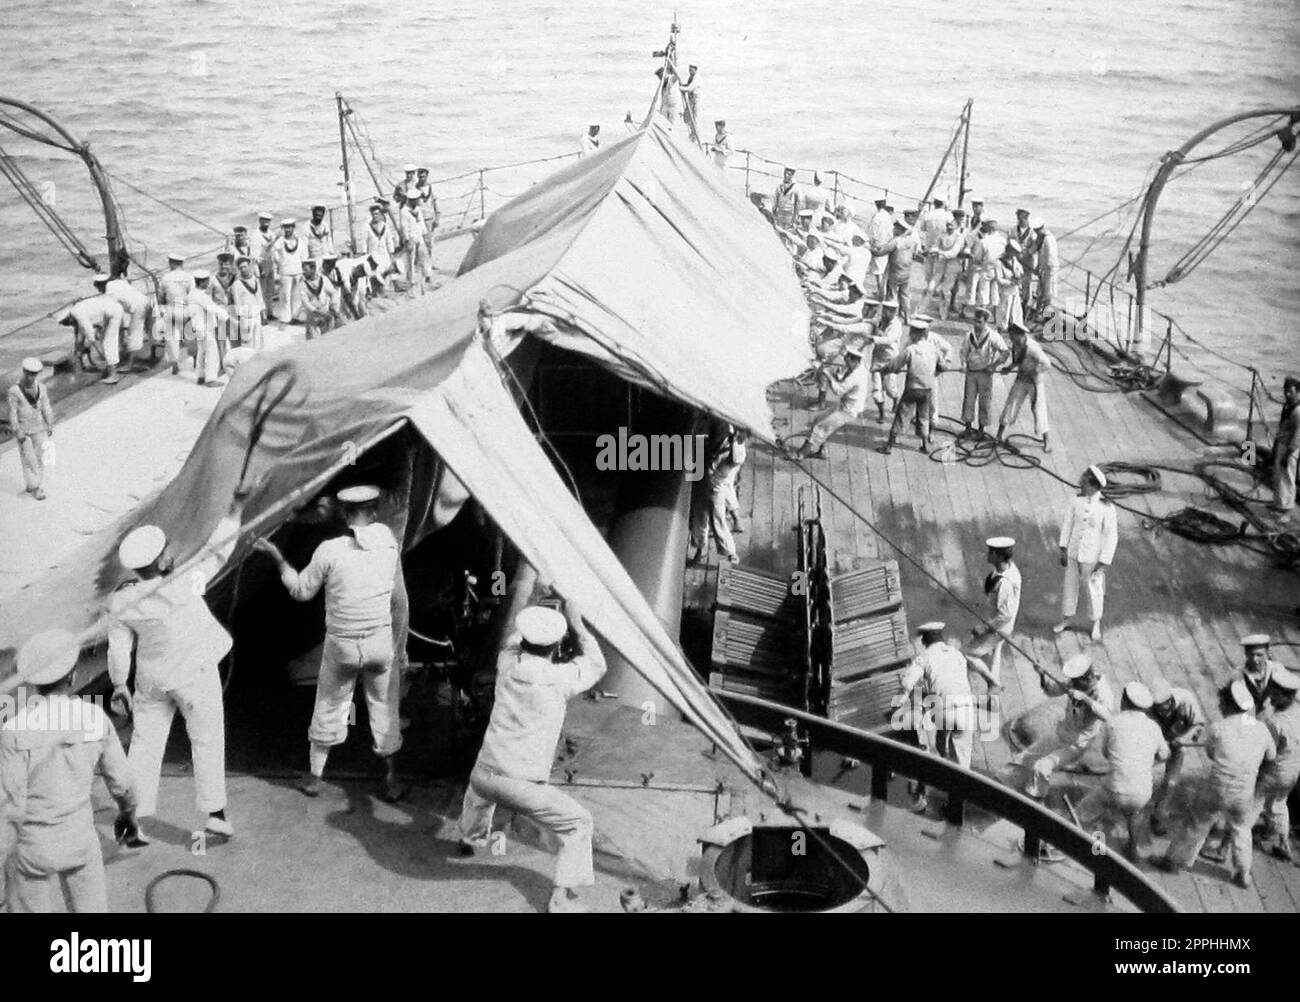 Ériger un auvent sur un navire de la Marine royale, début 1900s Banque D'Images